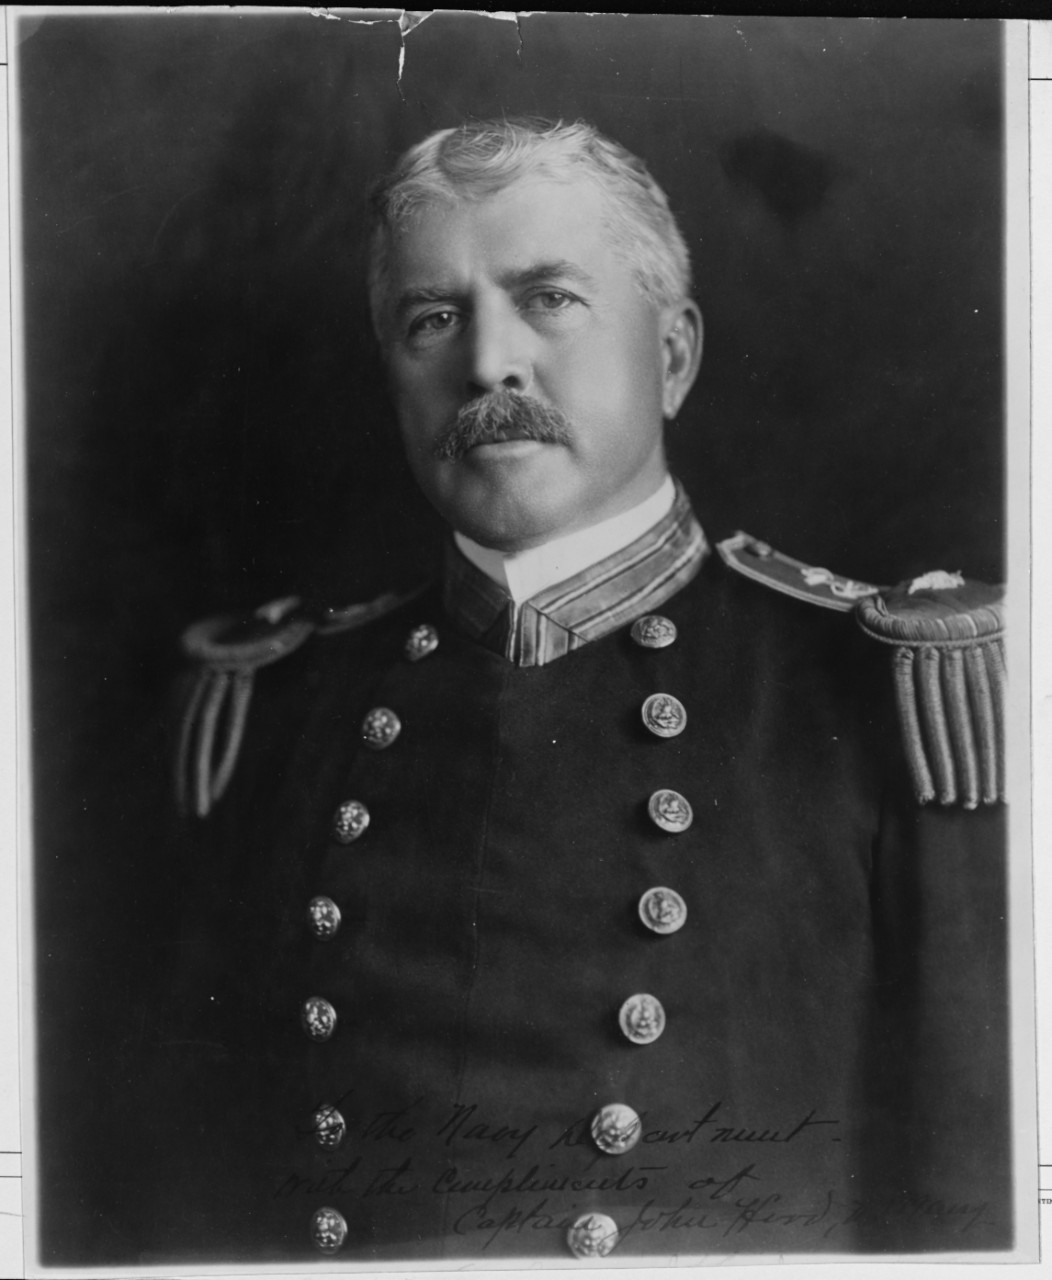 Captain John Hood, USN